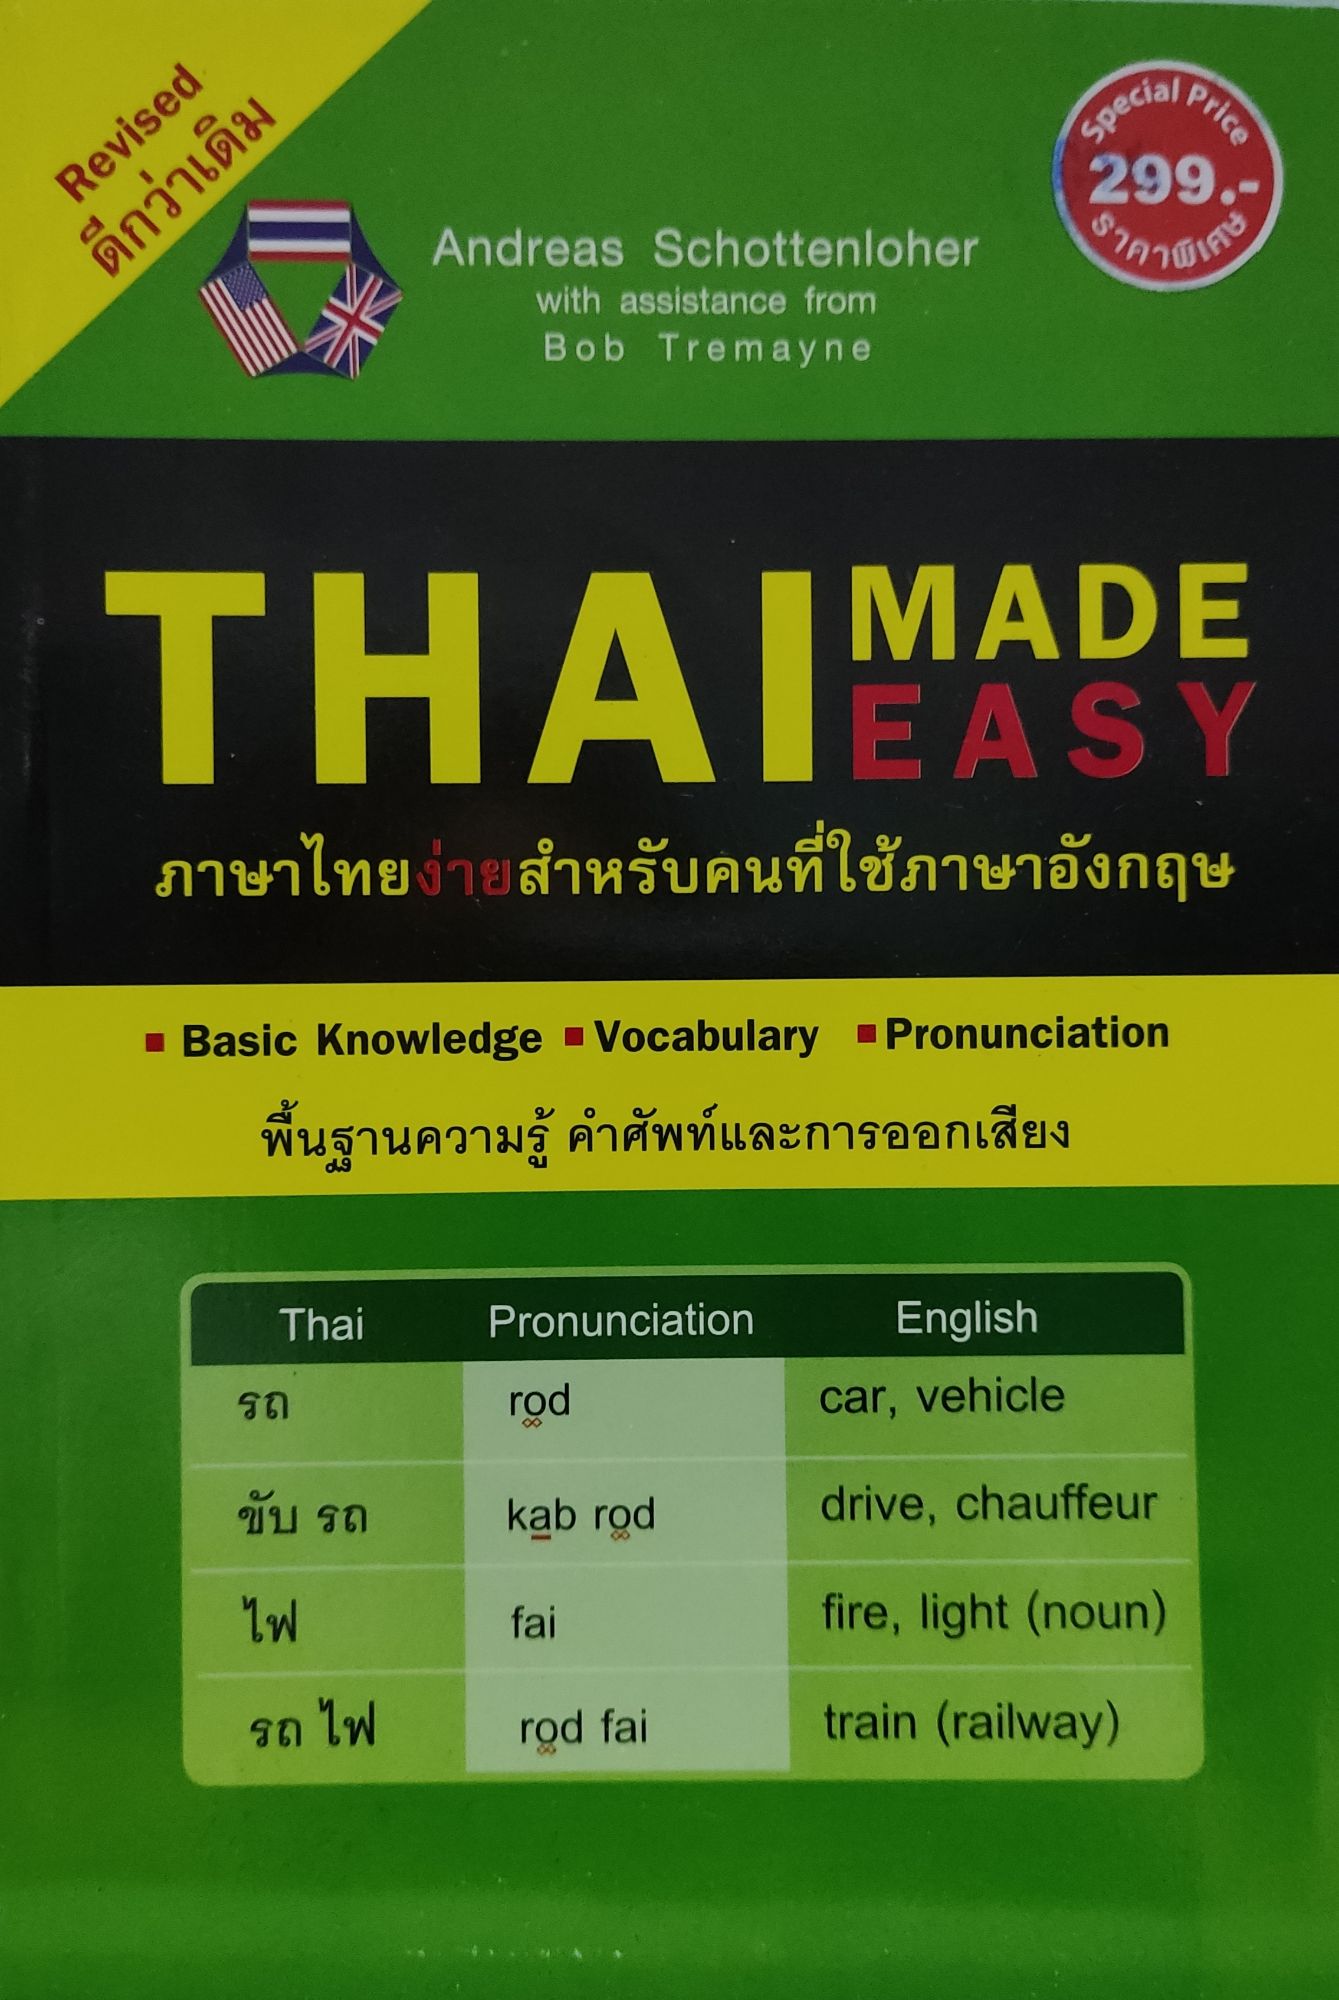 THAI MADE EASY ภาษาไทยสำหรับคนใช้ภาษาอังกฤษ